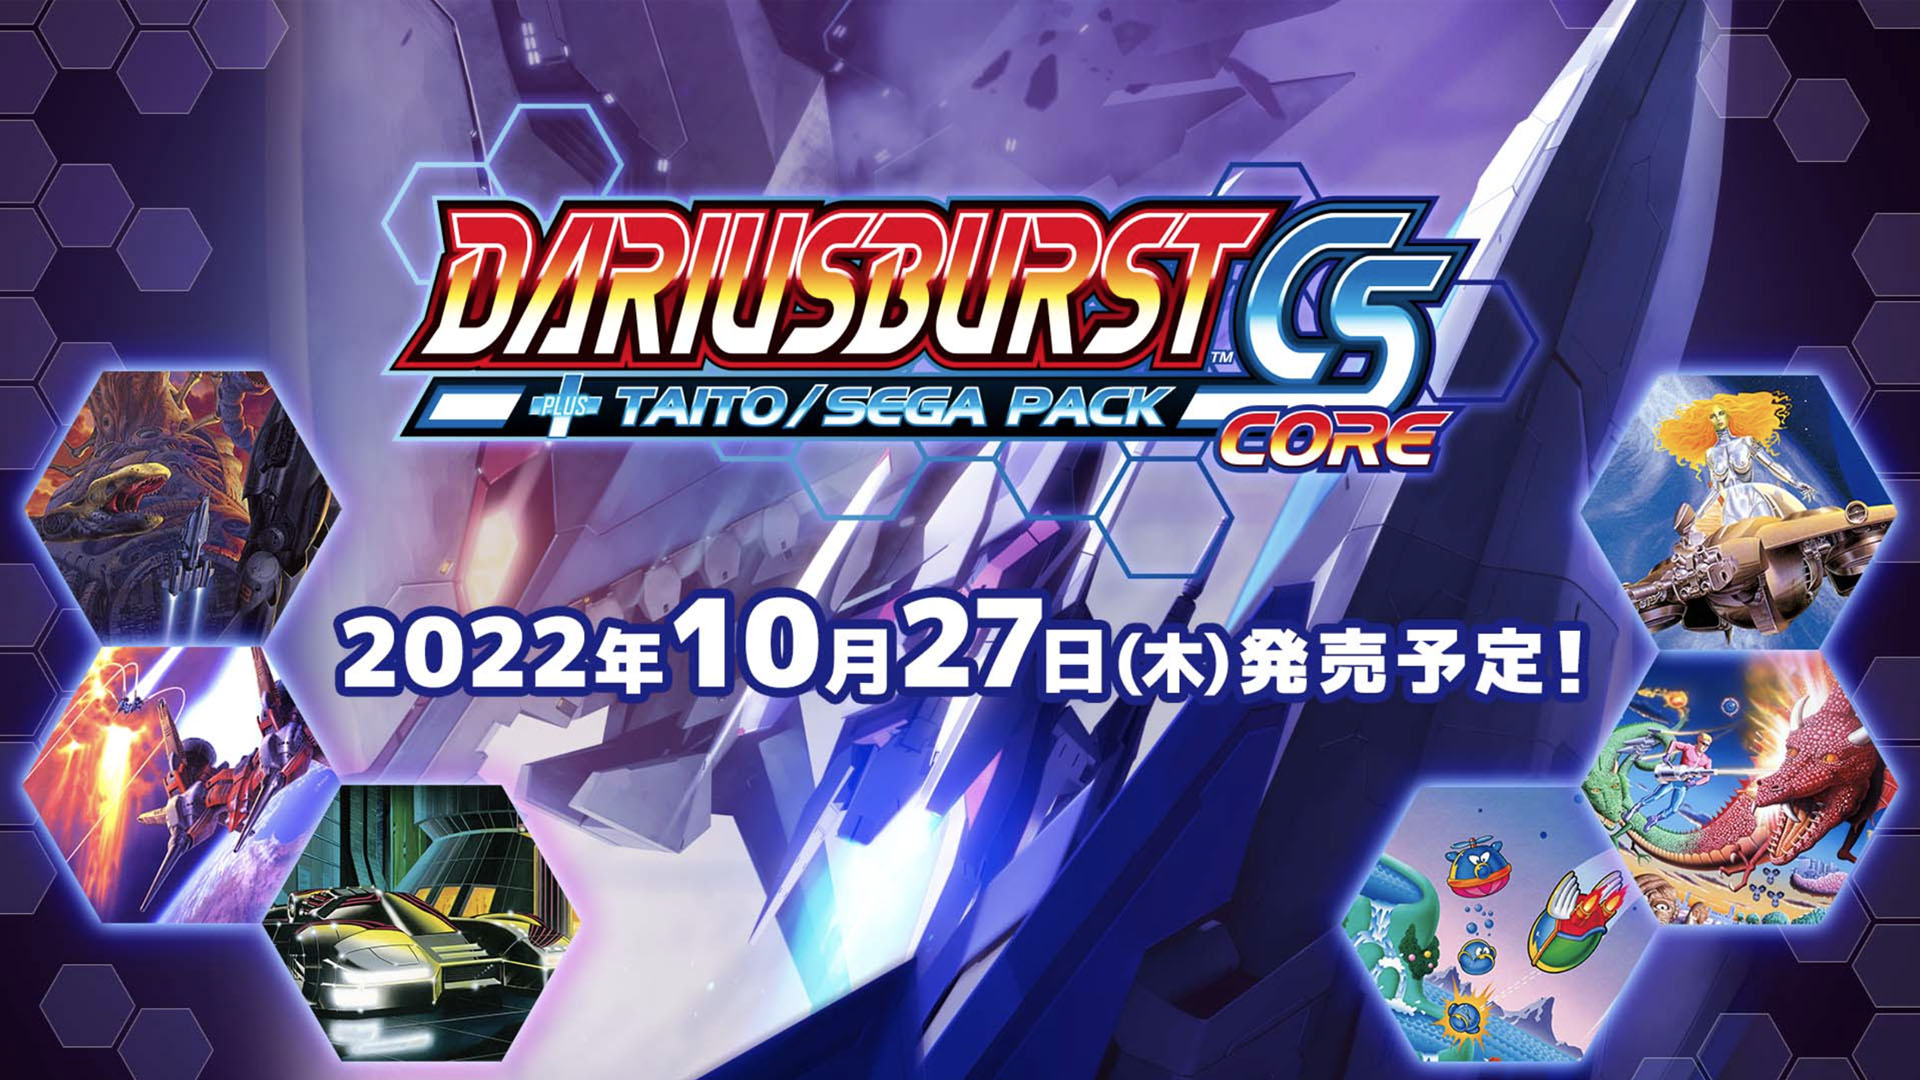 DARIUSBURST CS Core + Taito / Sega Pack